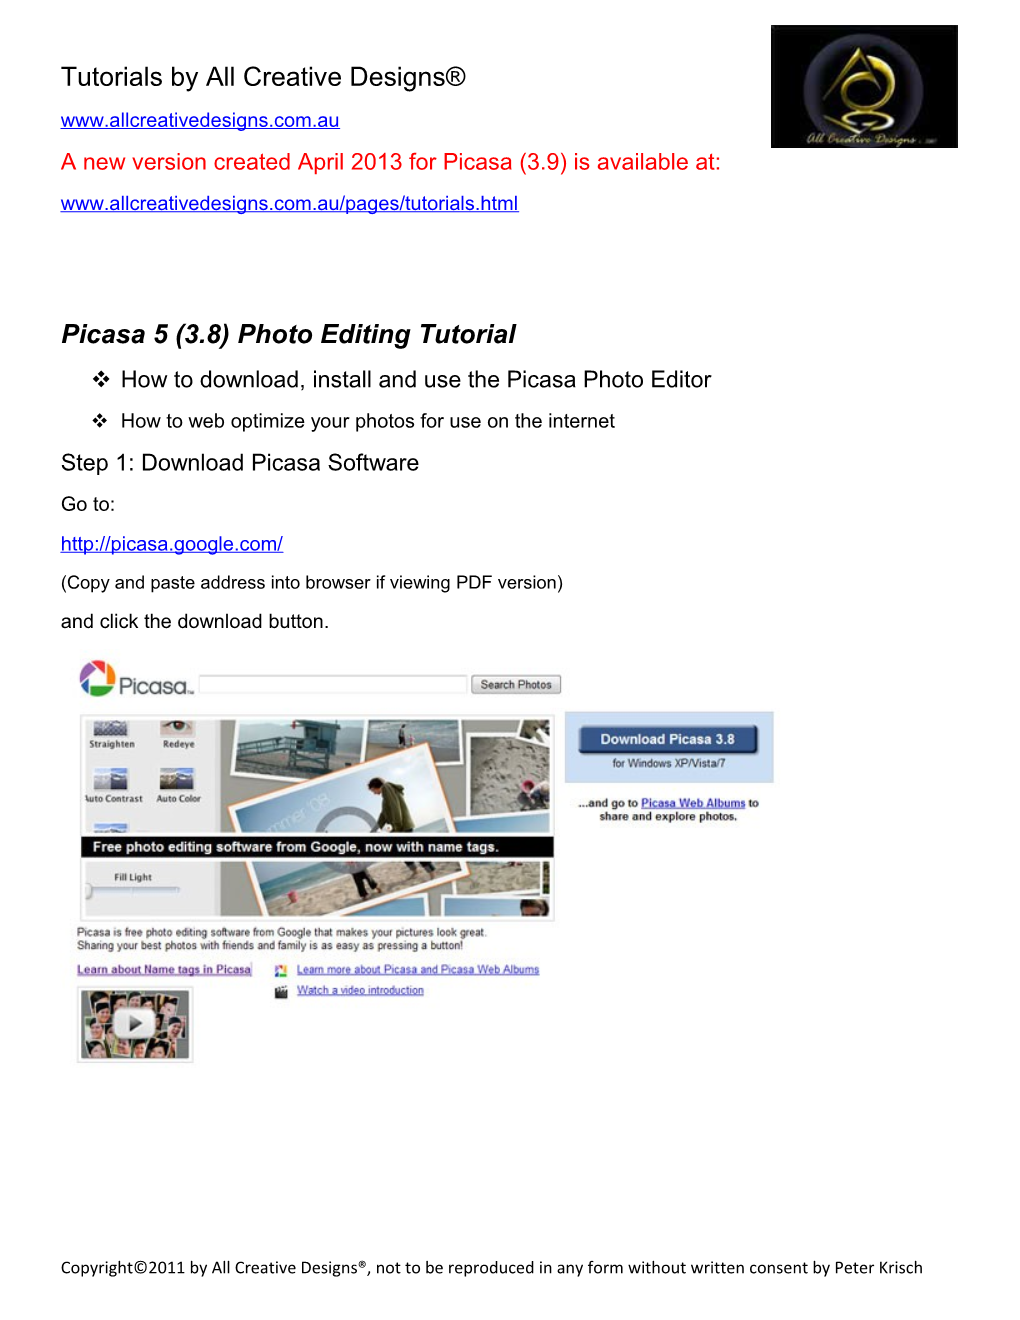 Picasa 5 (3.8) Photo Editing Tutorial